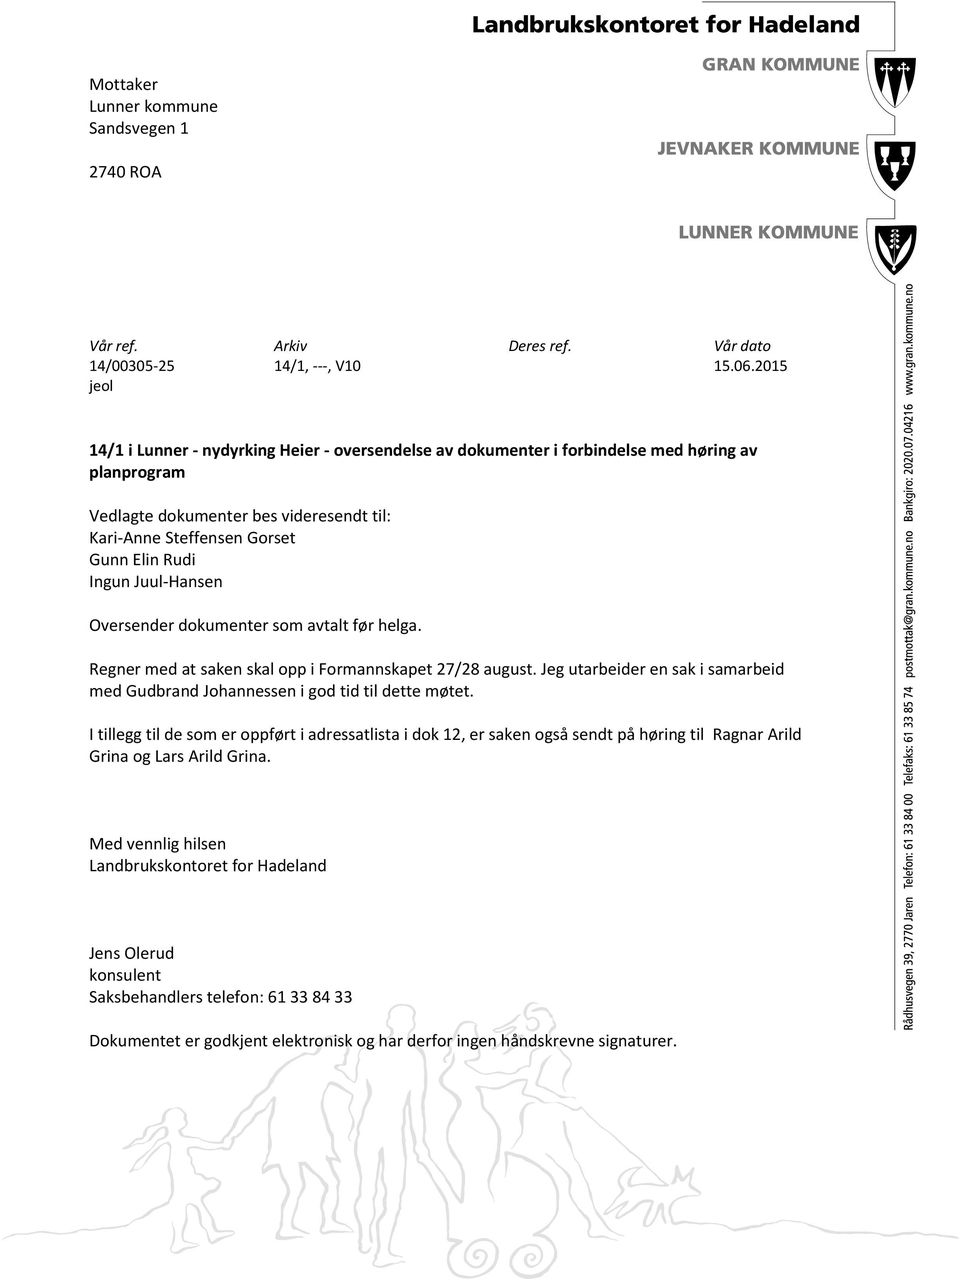 Ingun Juul-Hansen Oversender dokumenter som avtalt før helga. Regner med at saken skal opp i Formannskapet 27/28 august.